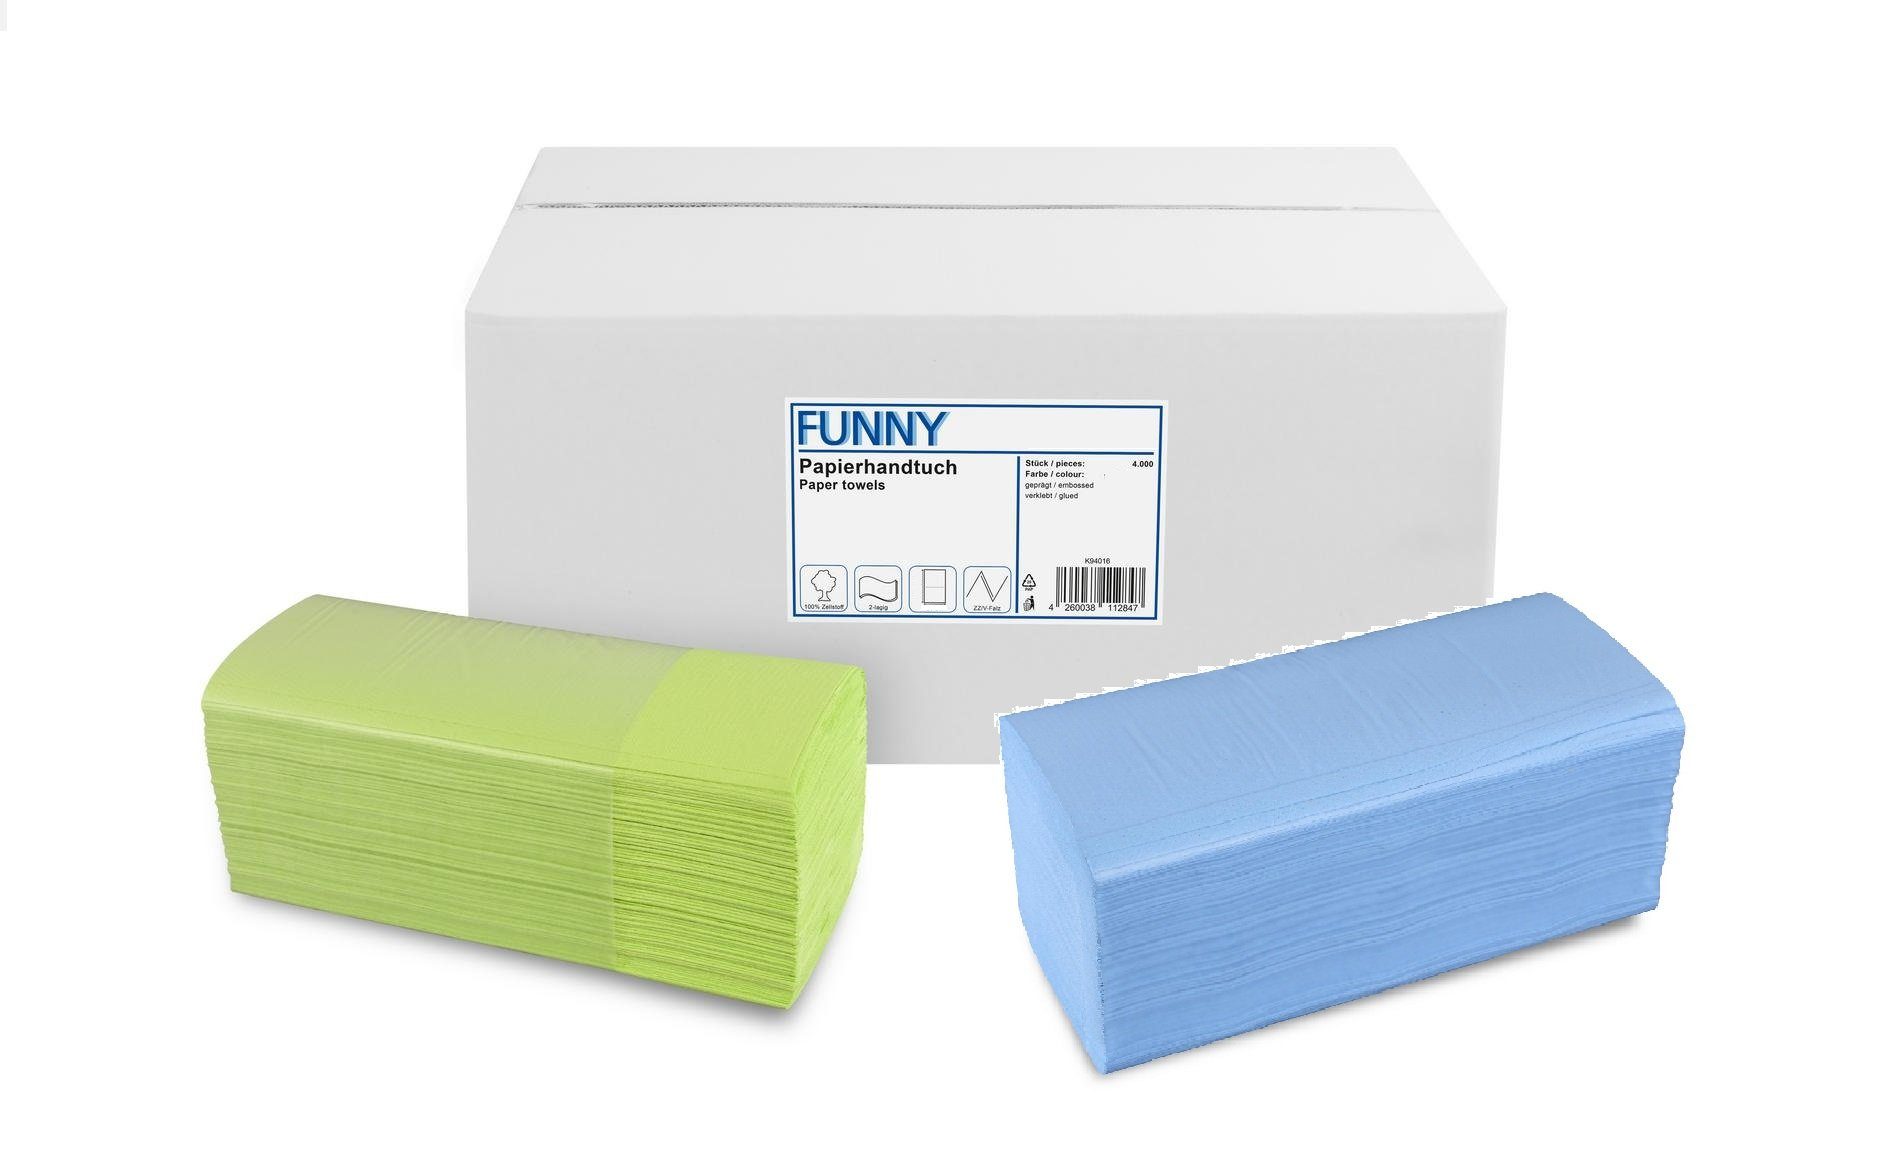 Funny Papierhandtuch farbig, Zellstoff, 2-lagig, 4000 Blatt, praktischer ZZ/V-Falz für Spender in Medizin, Gastronomie und Studios